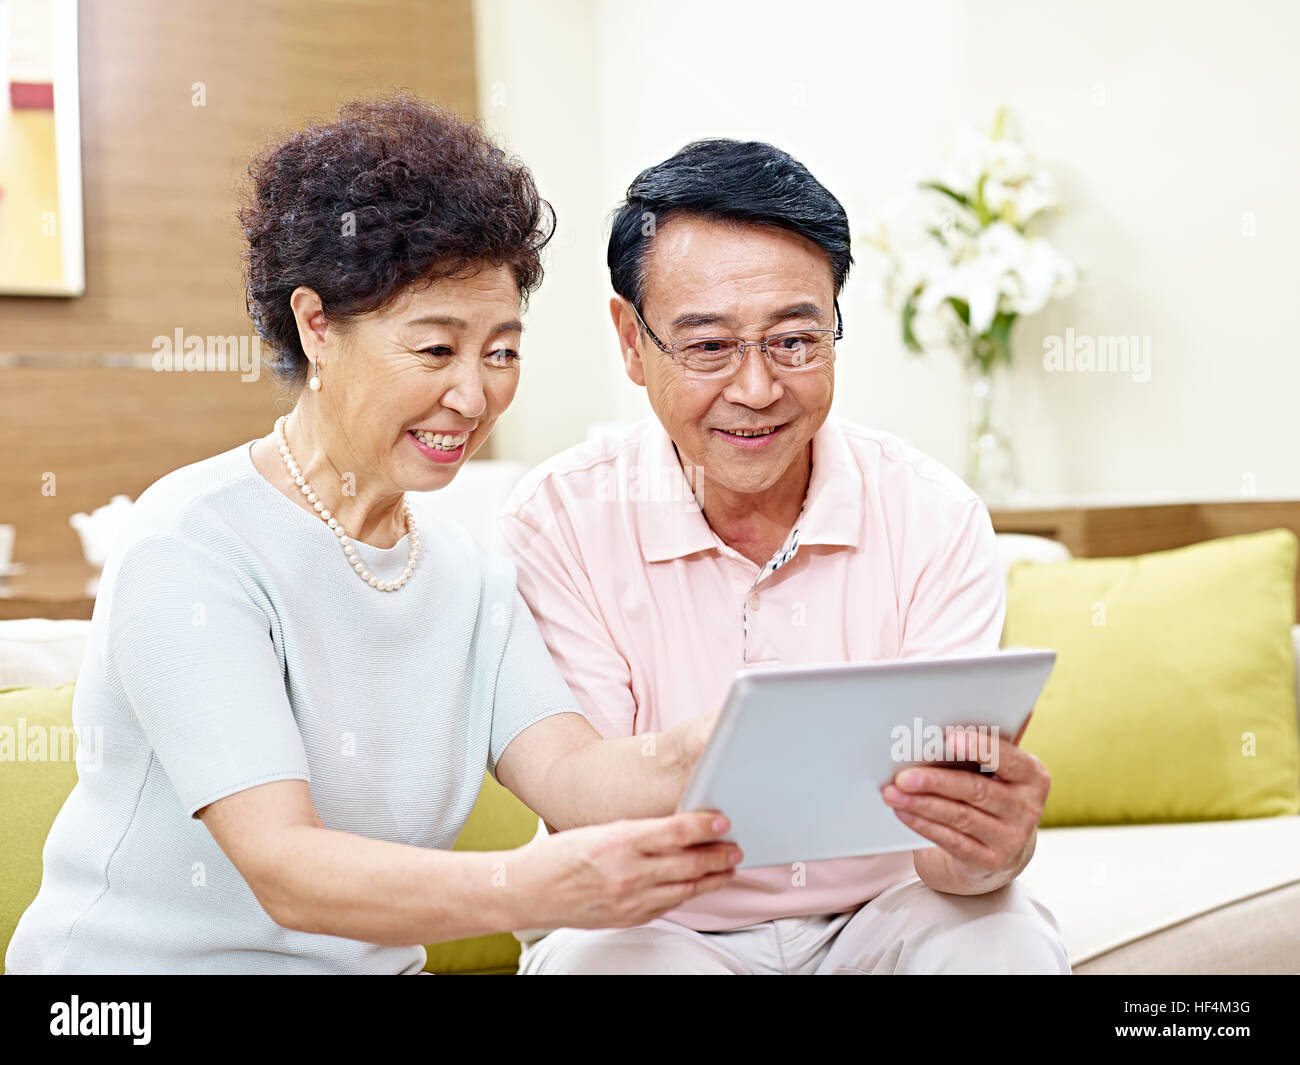 hochrangige asiatische paar sitzt auf couch Blick auf Tablet-Computer zusammen, glücklich und lächelnd Stockfoto